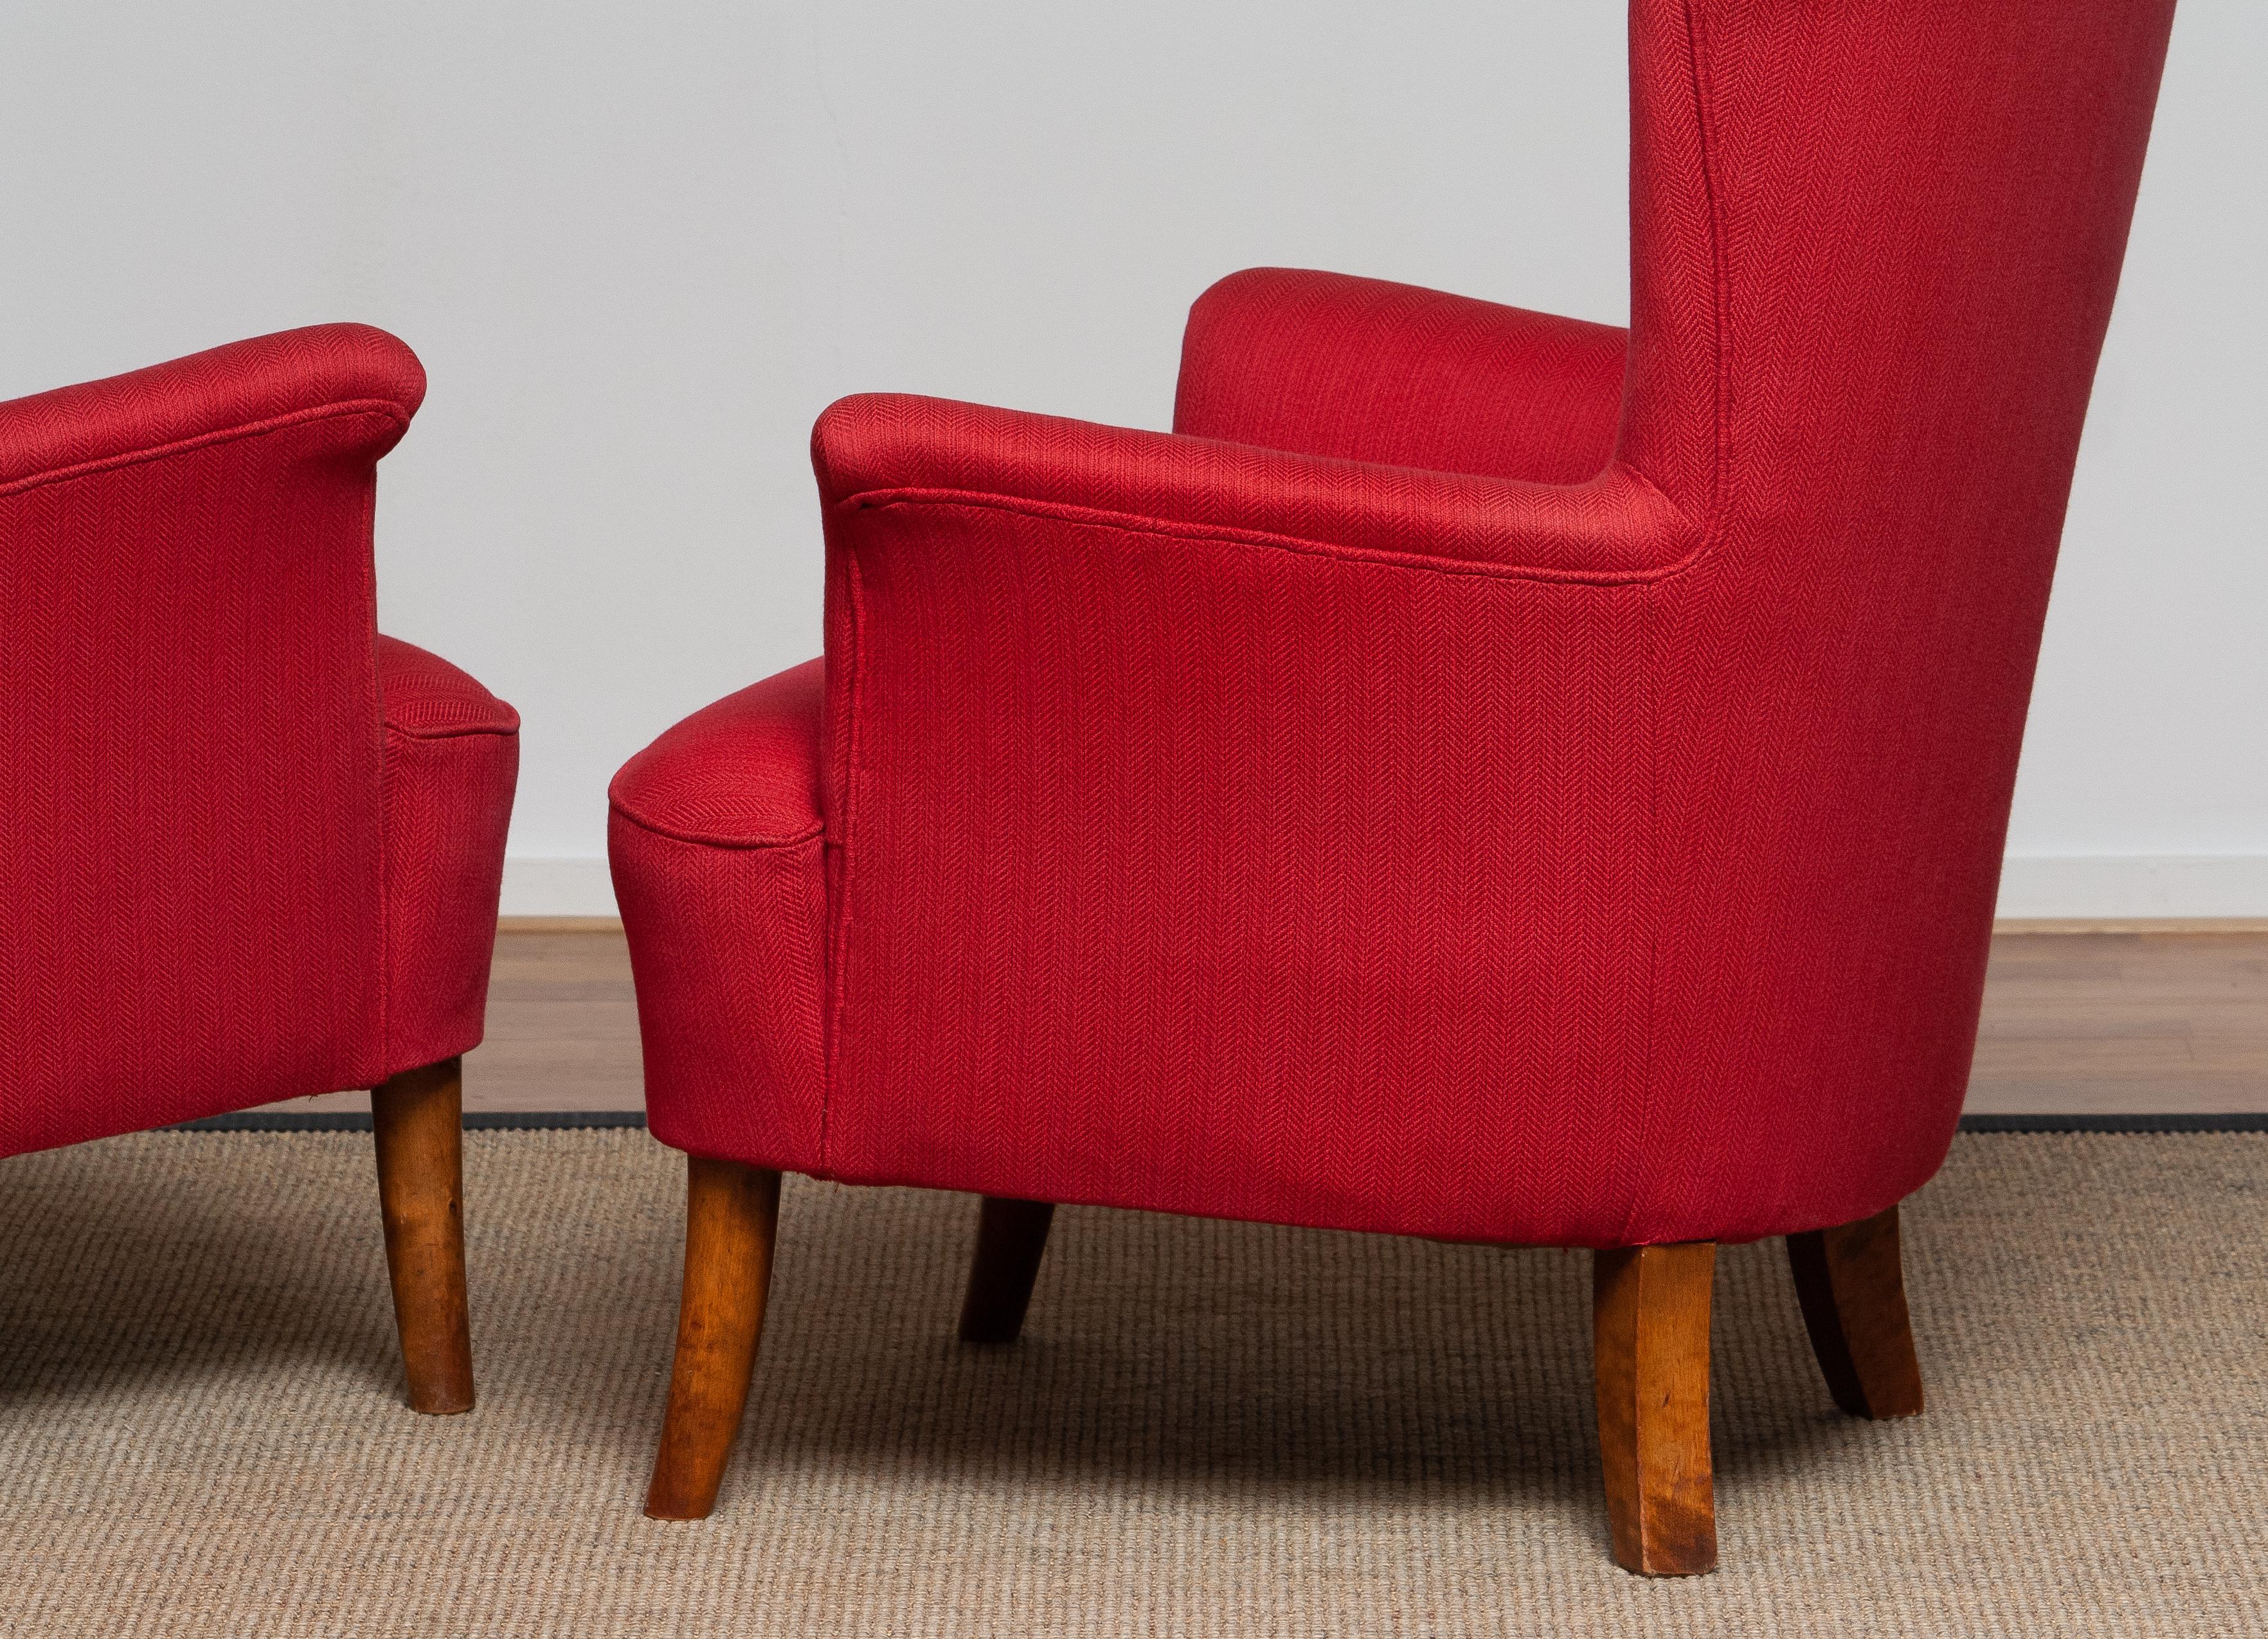 1940s, Pair of Fuchsia Easy / Lounge Chair by Carl Malmsten for Oh Sjogren 6